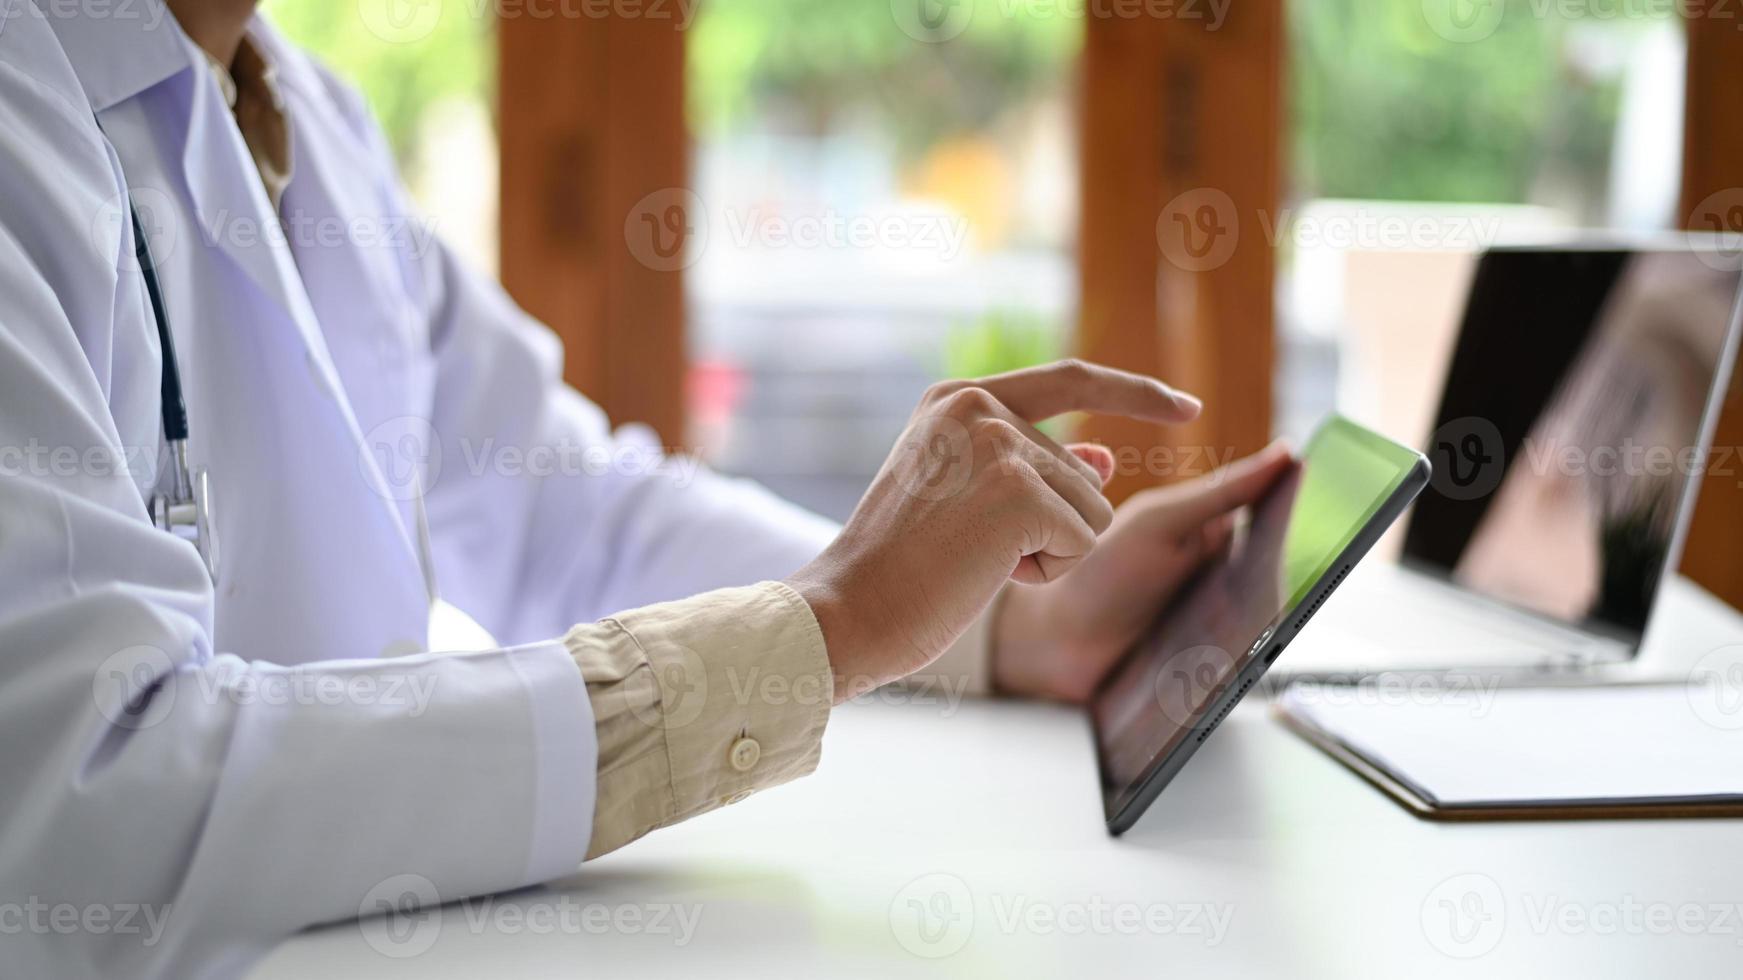 en man i en labbdräkt håller och driver en tablett, en läkare i en labbrock använder en tablett, sidoskottfoto. foto